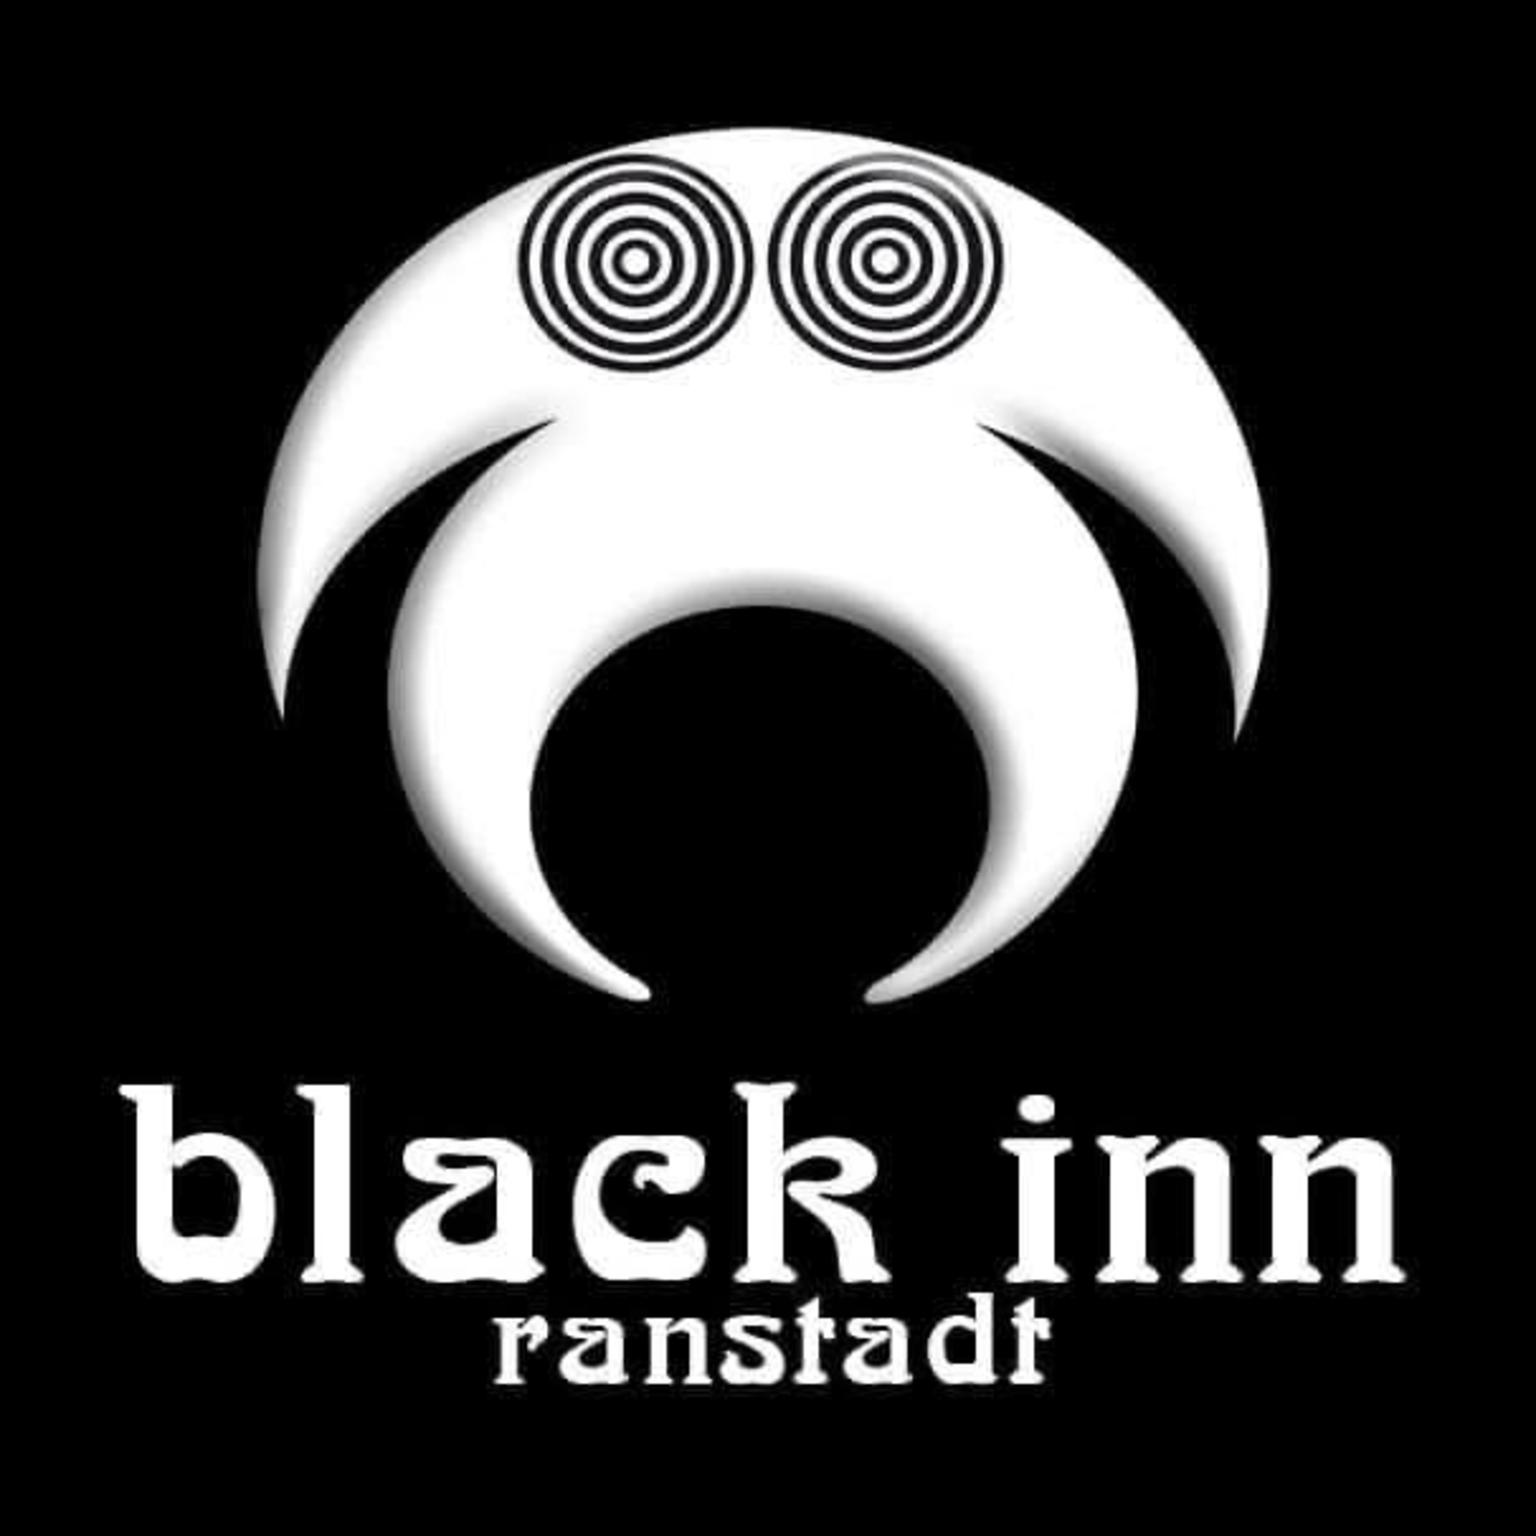 Black Inn nightclub